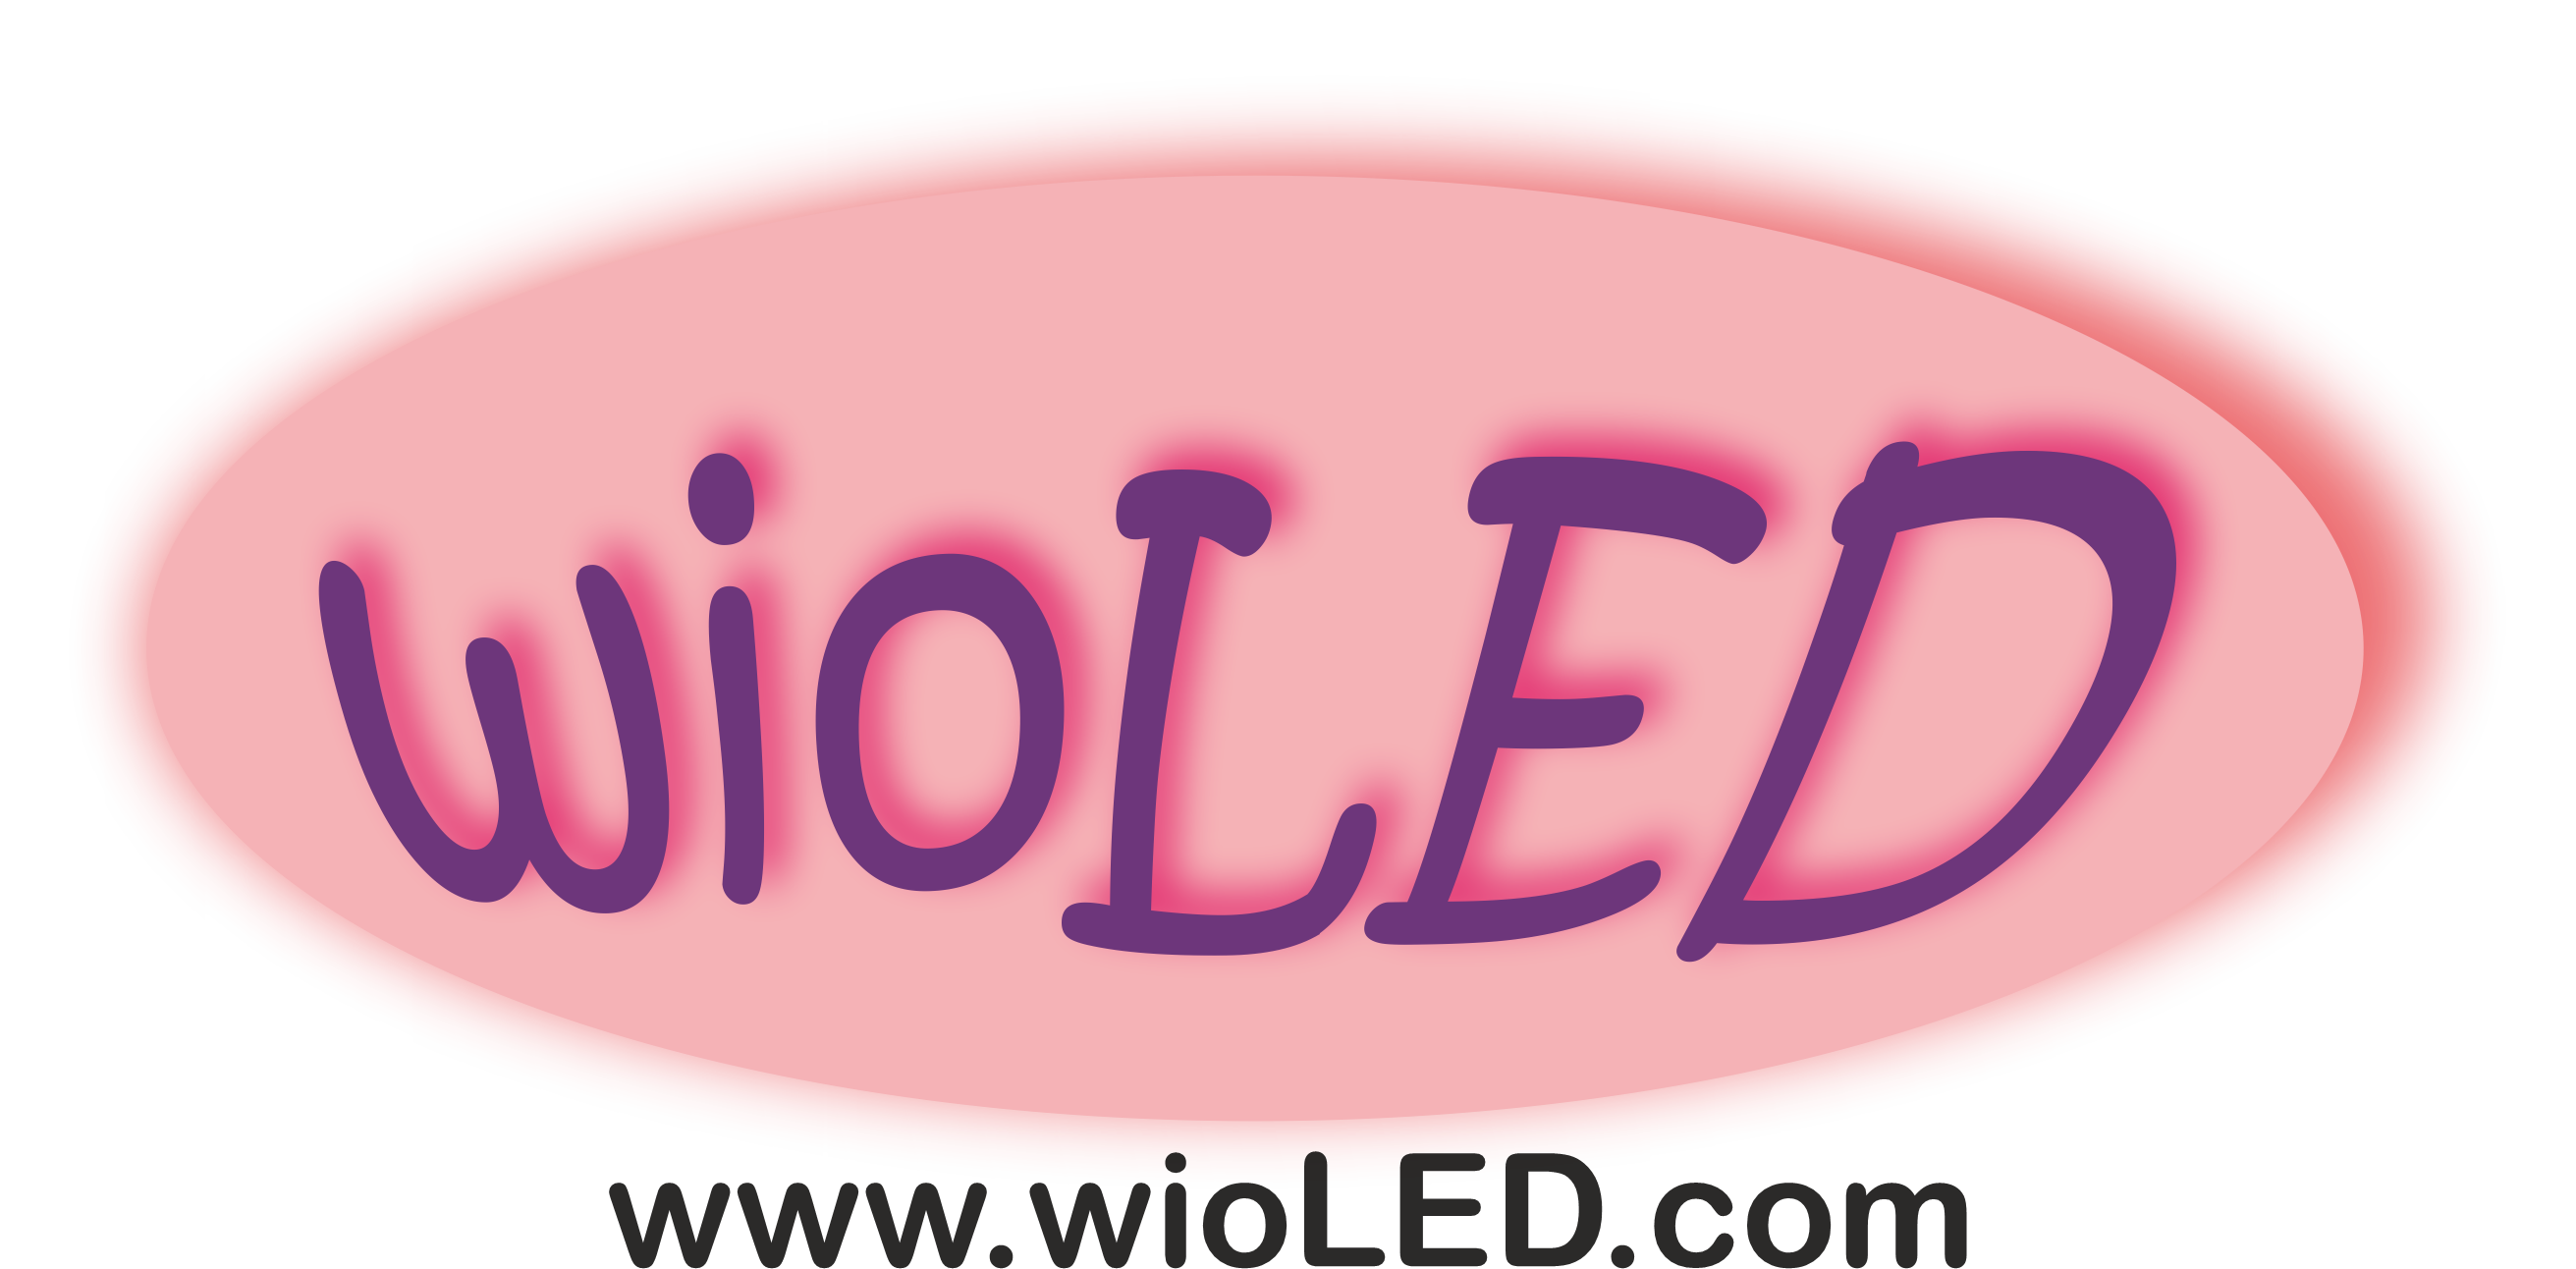 www.wioled.com